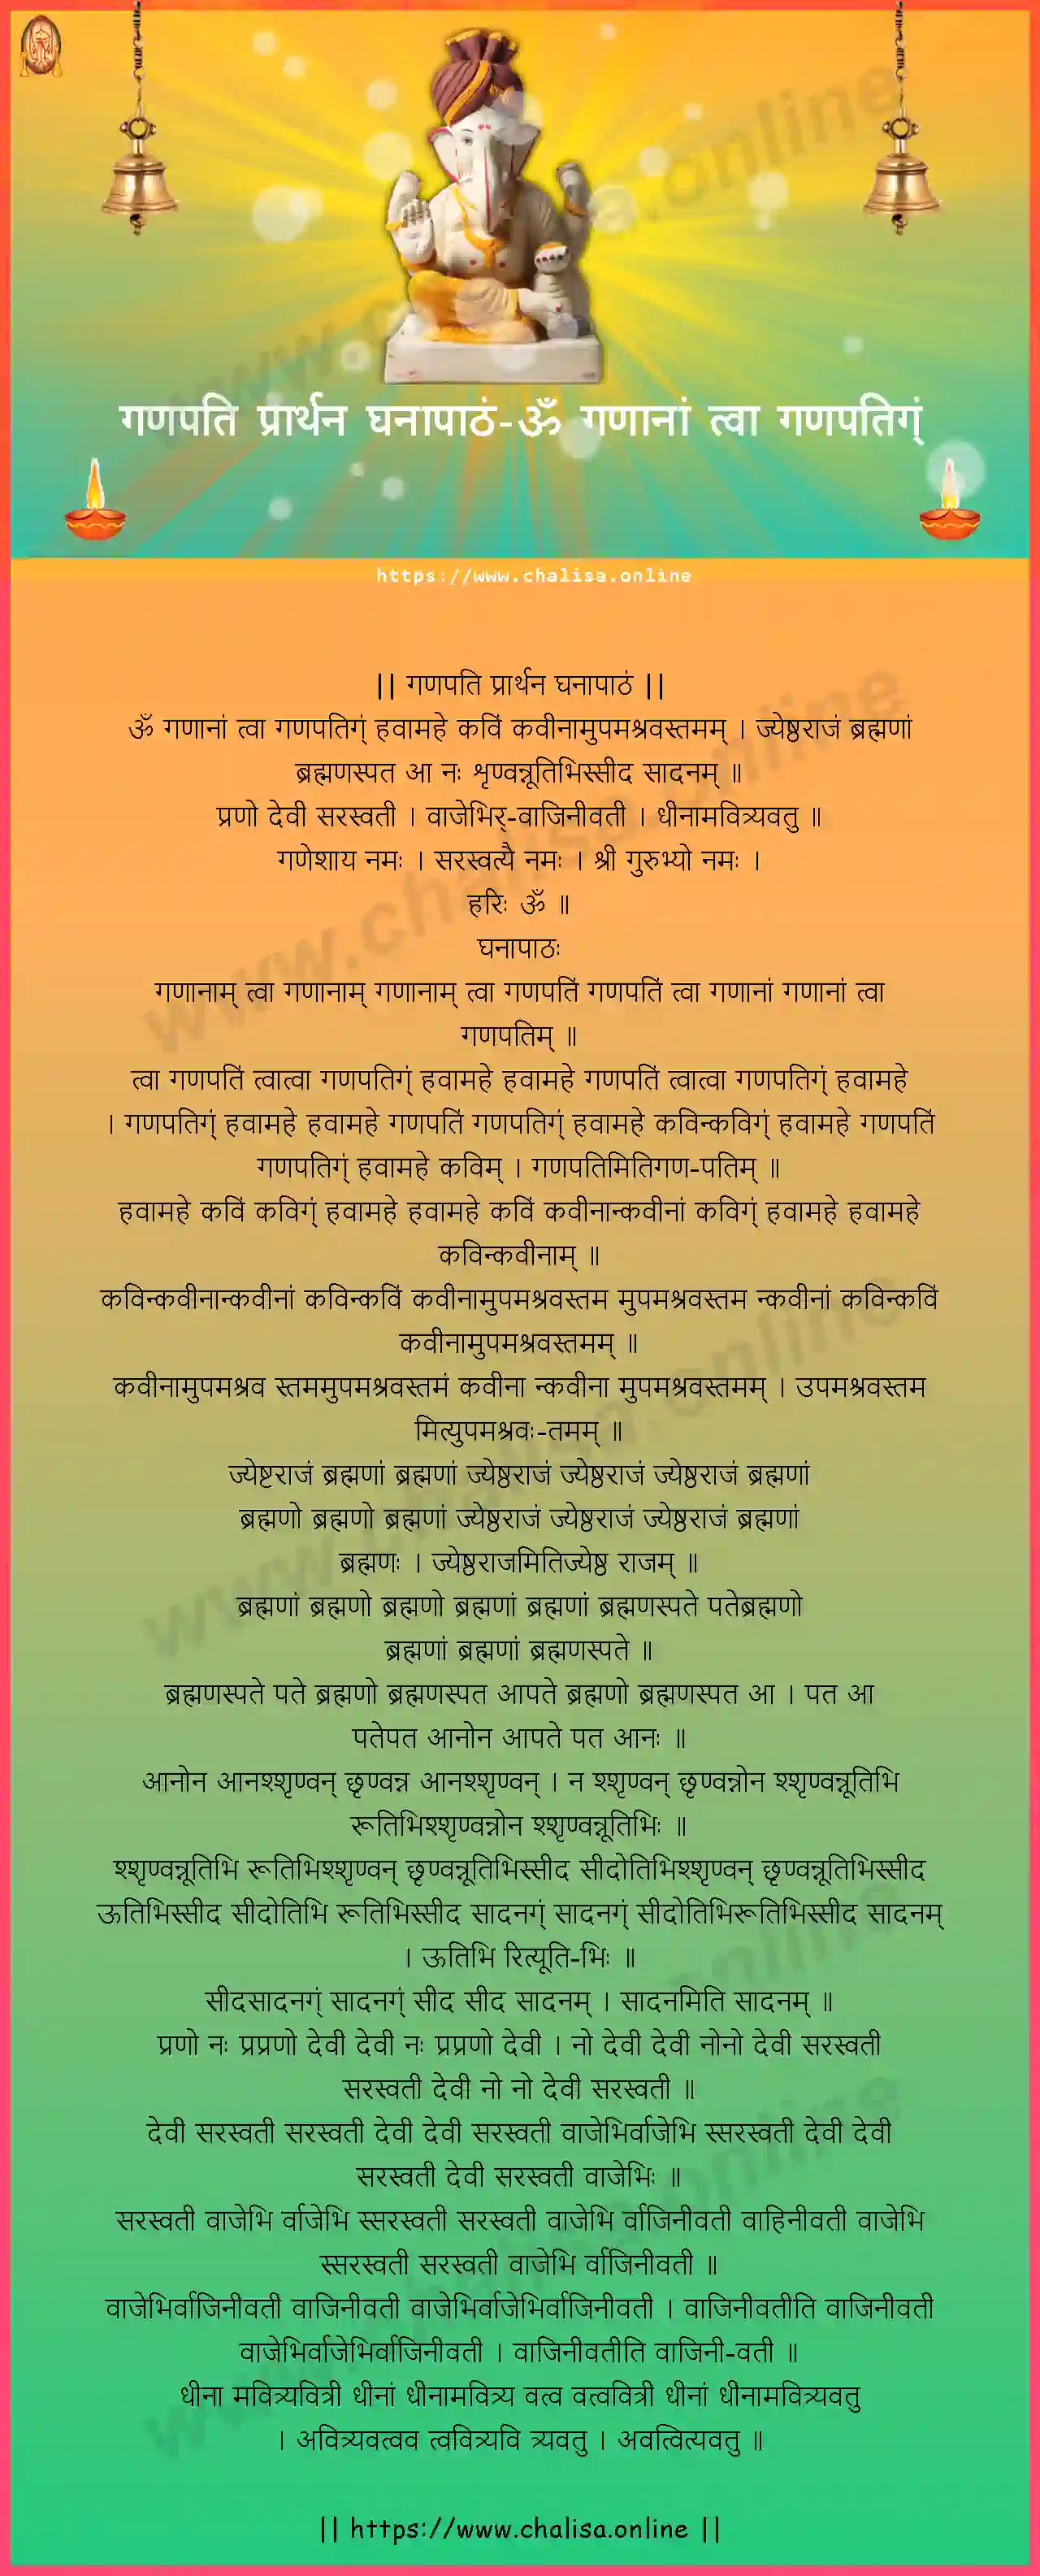 om-gananam-tva-ganapati-prarthana-ghanapatham-sanskrit-sanskrit-lyrics-download